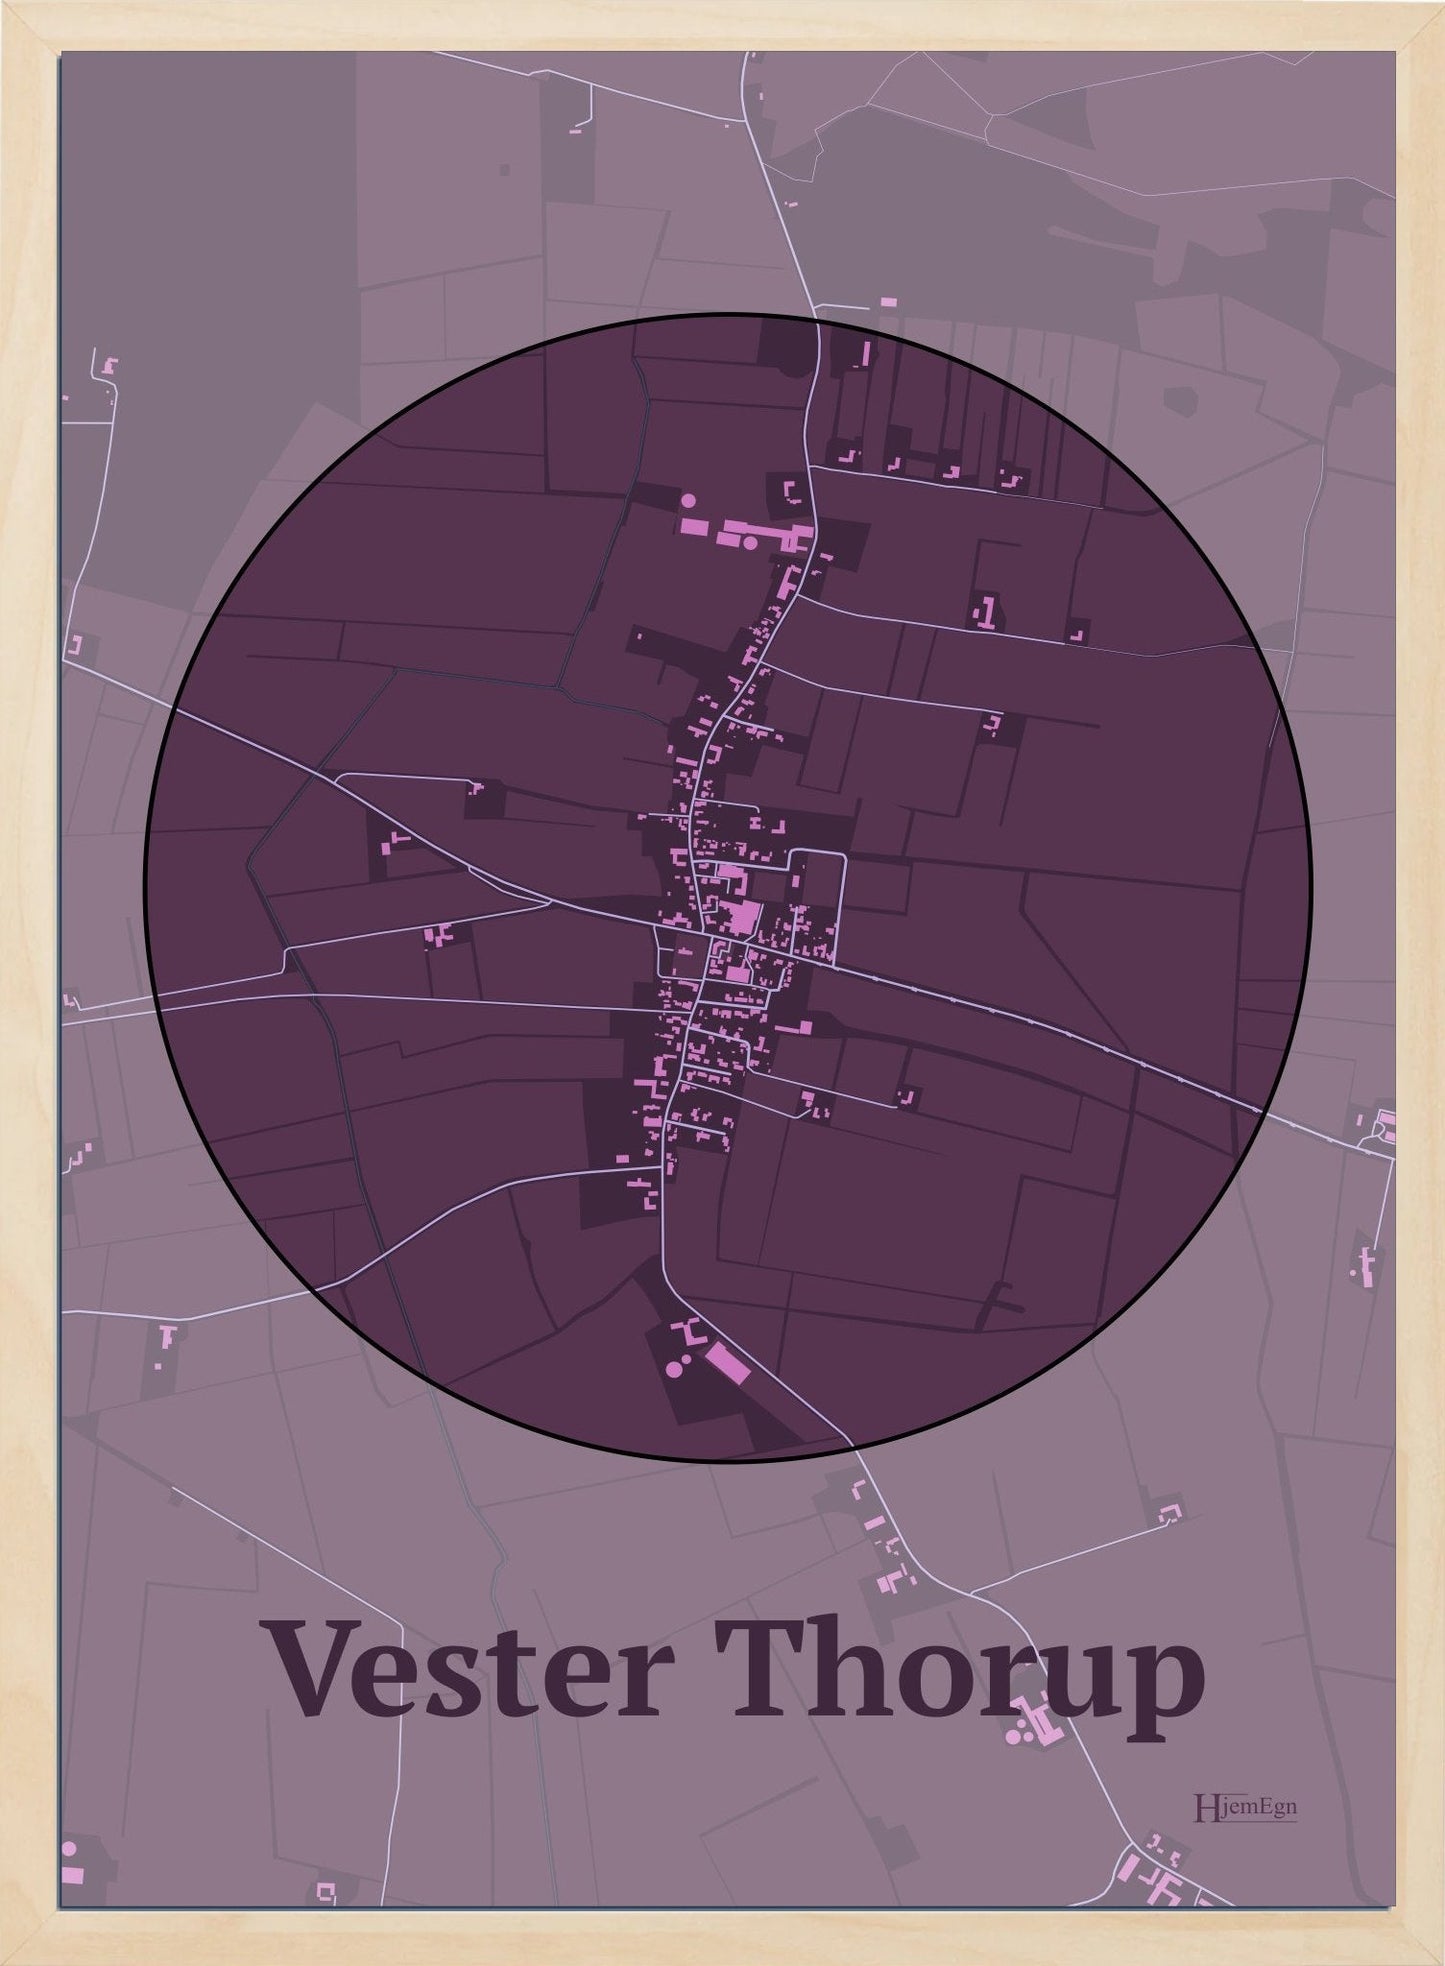 Vester Thorup plakat i farve mørk rød og HjemEgn.dk design centrum. Design bykort for Vester Thorup